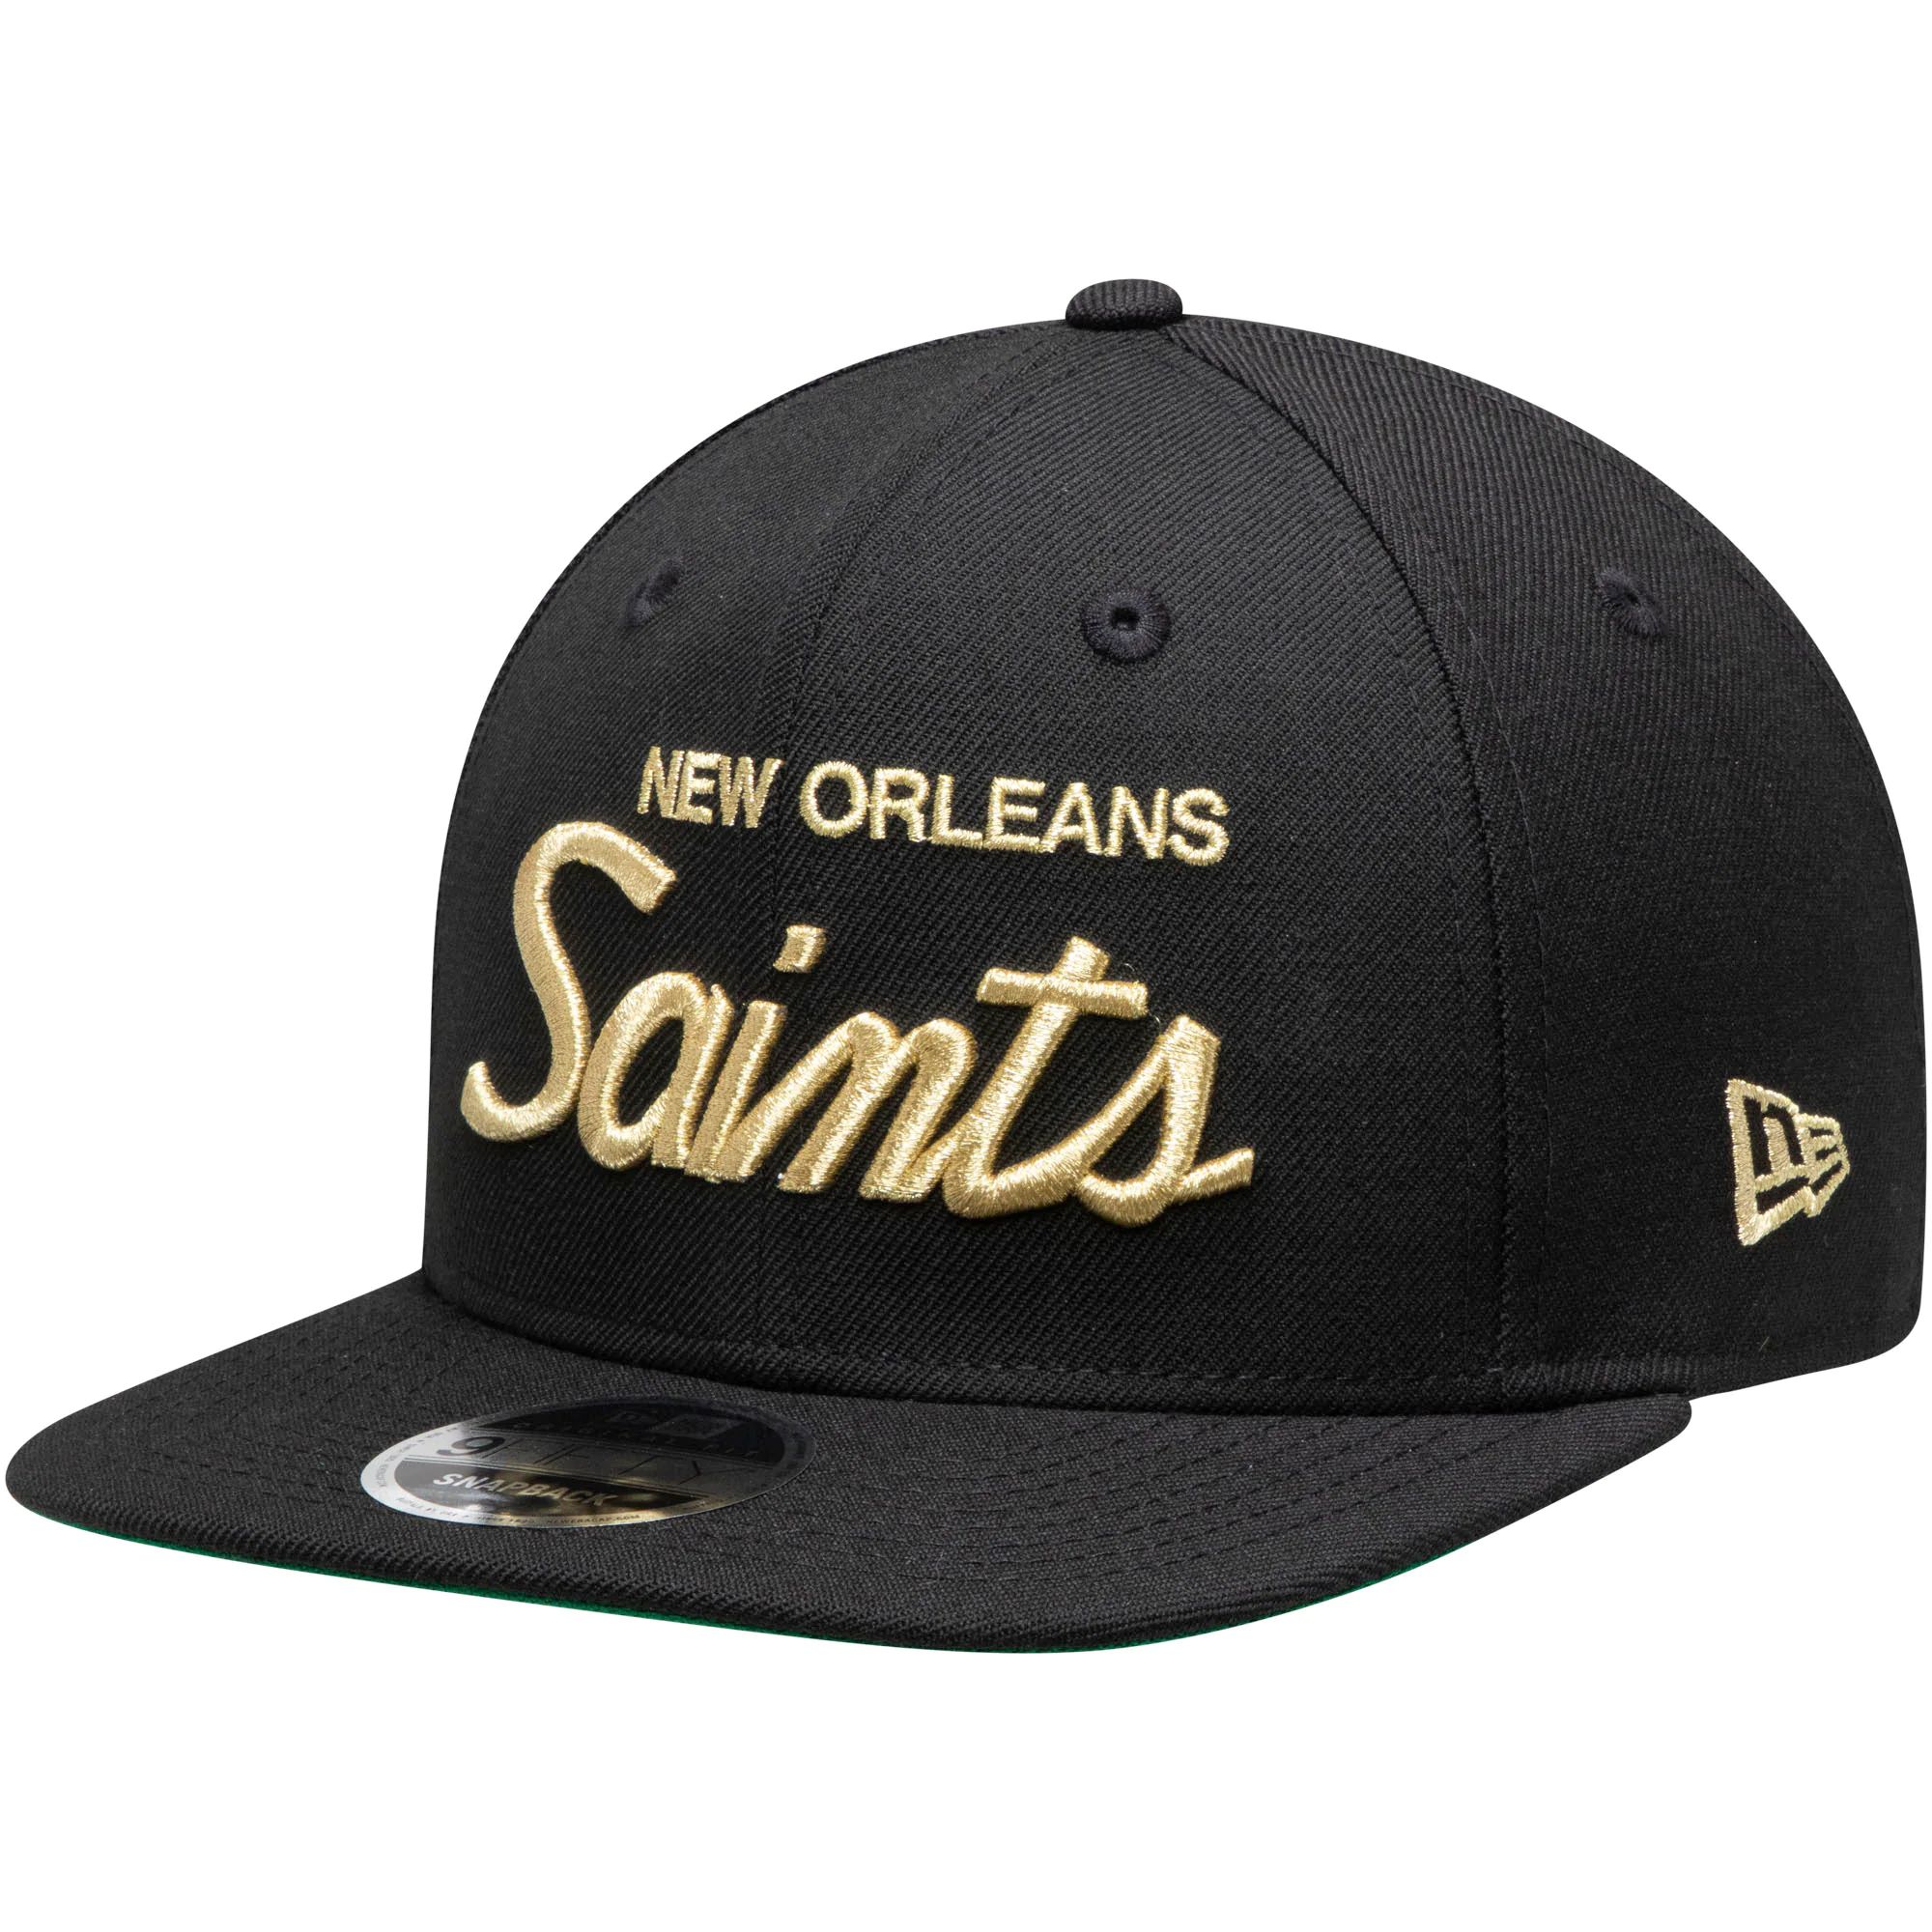 2022 NFL New Orleans Saints Hat TX 0919->nfl hats->Sports Caps